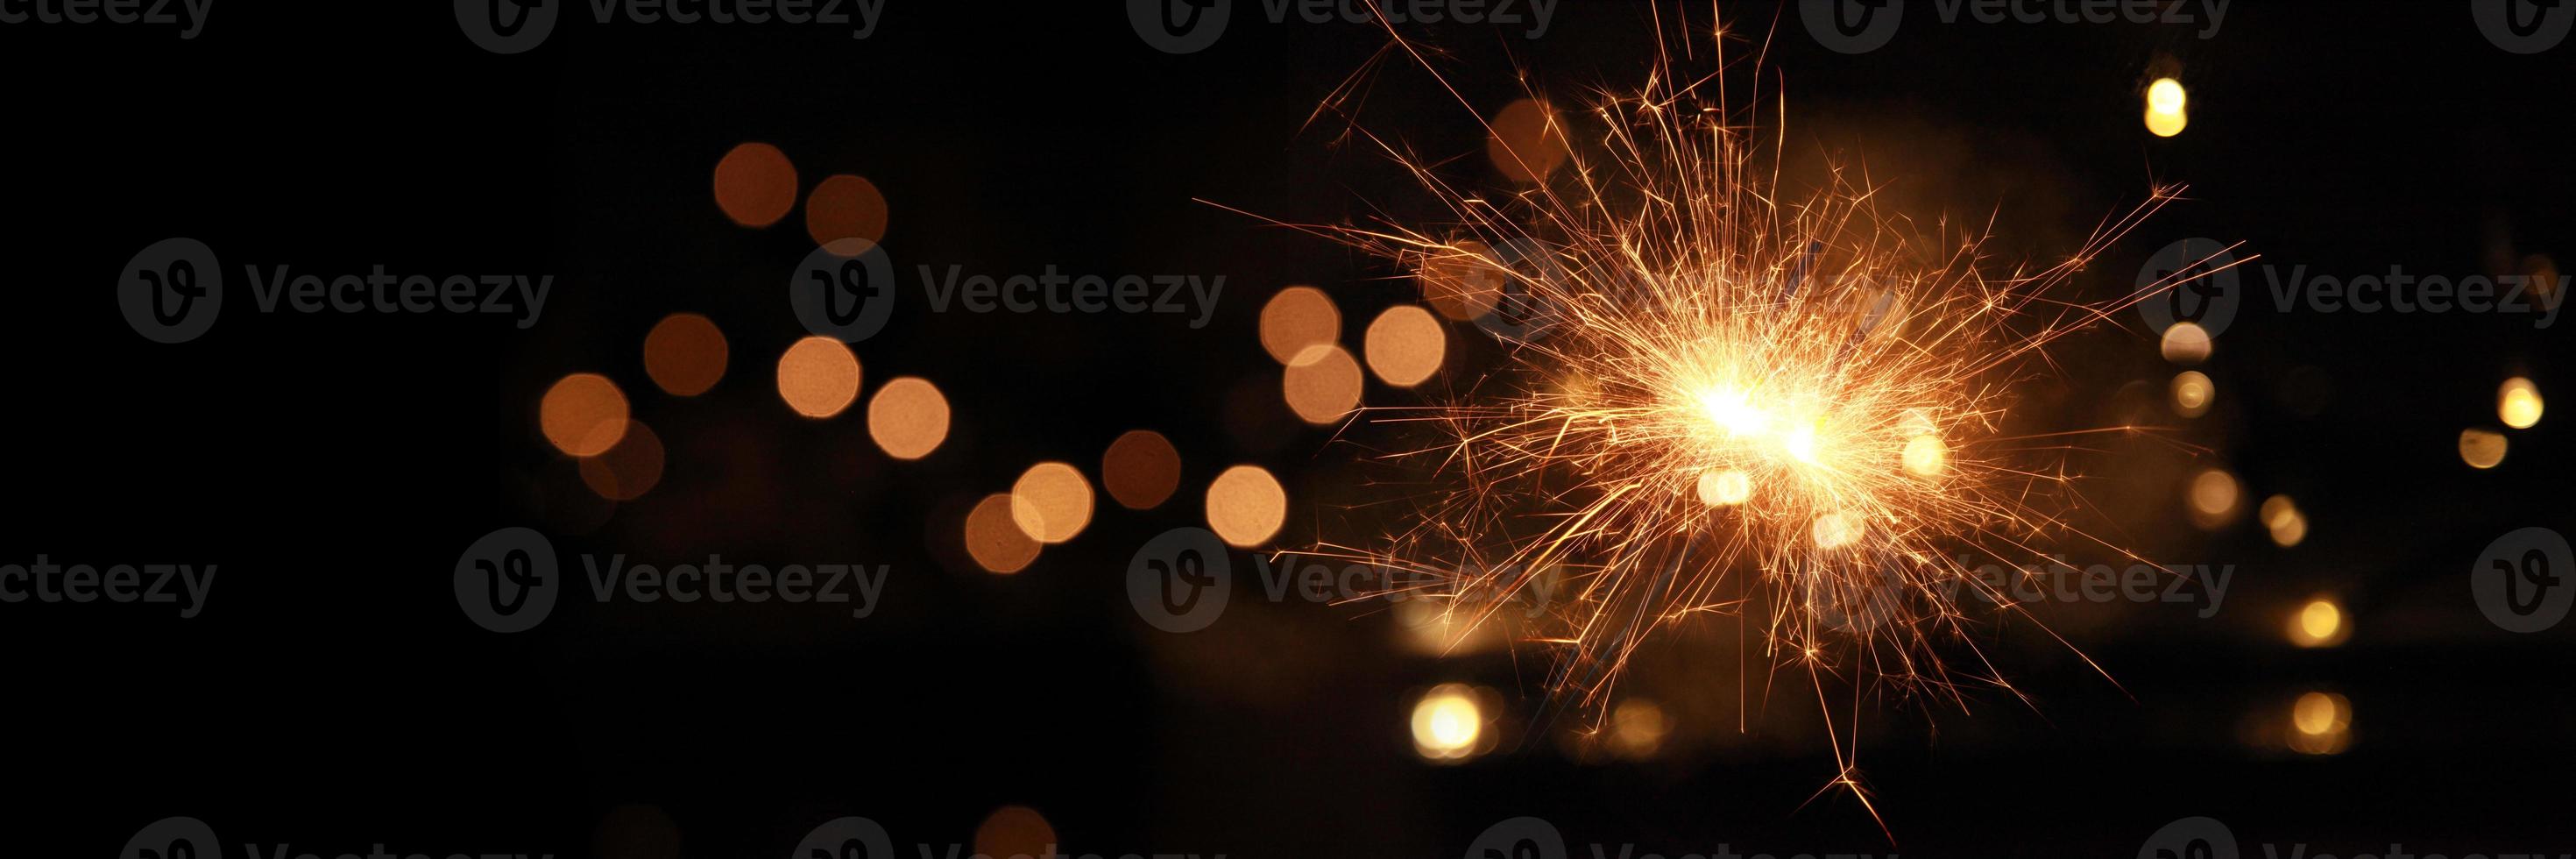 feliz año nuevo fondo con luces de bengala brillantes. foto